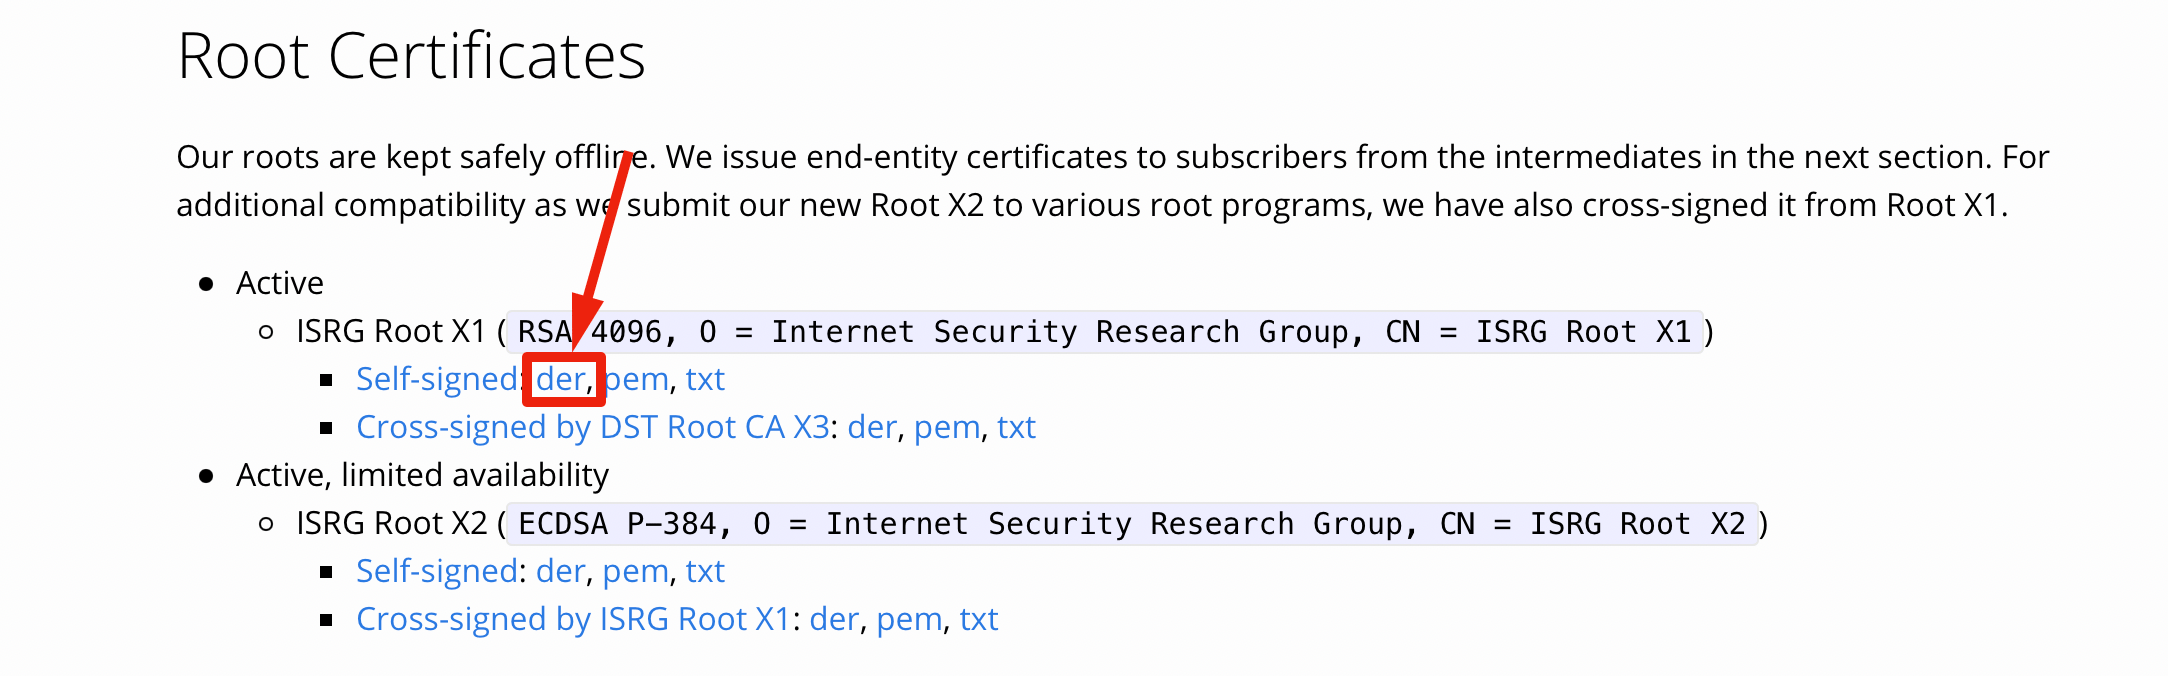 скачиваем корневой сертификат с официального сайта Let’s Encrypt